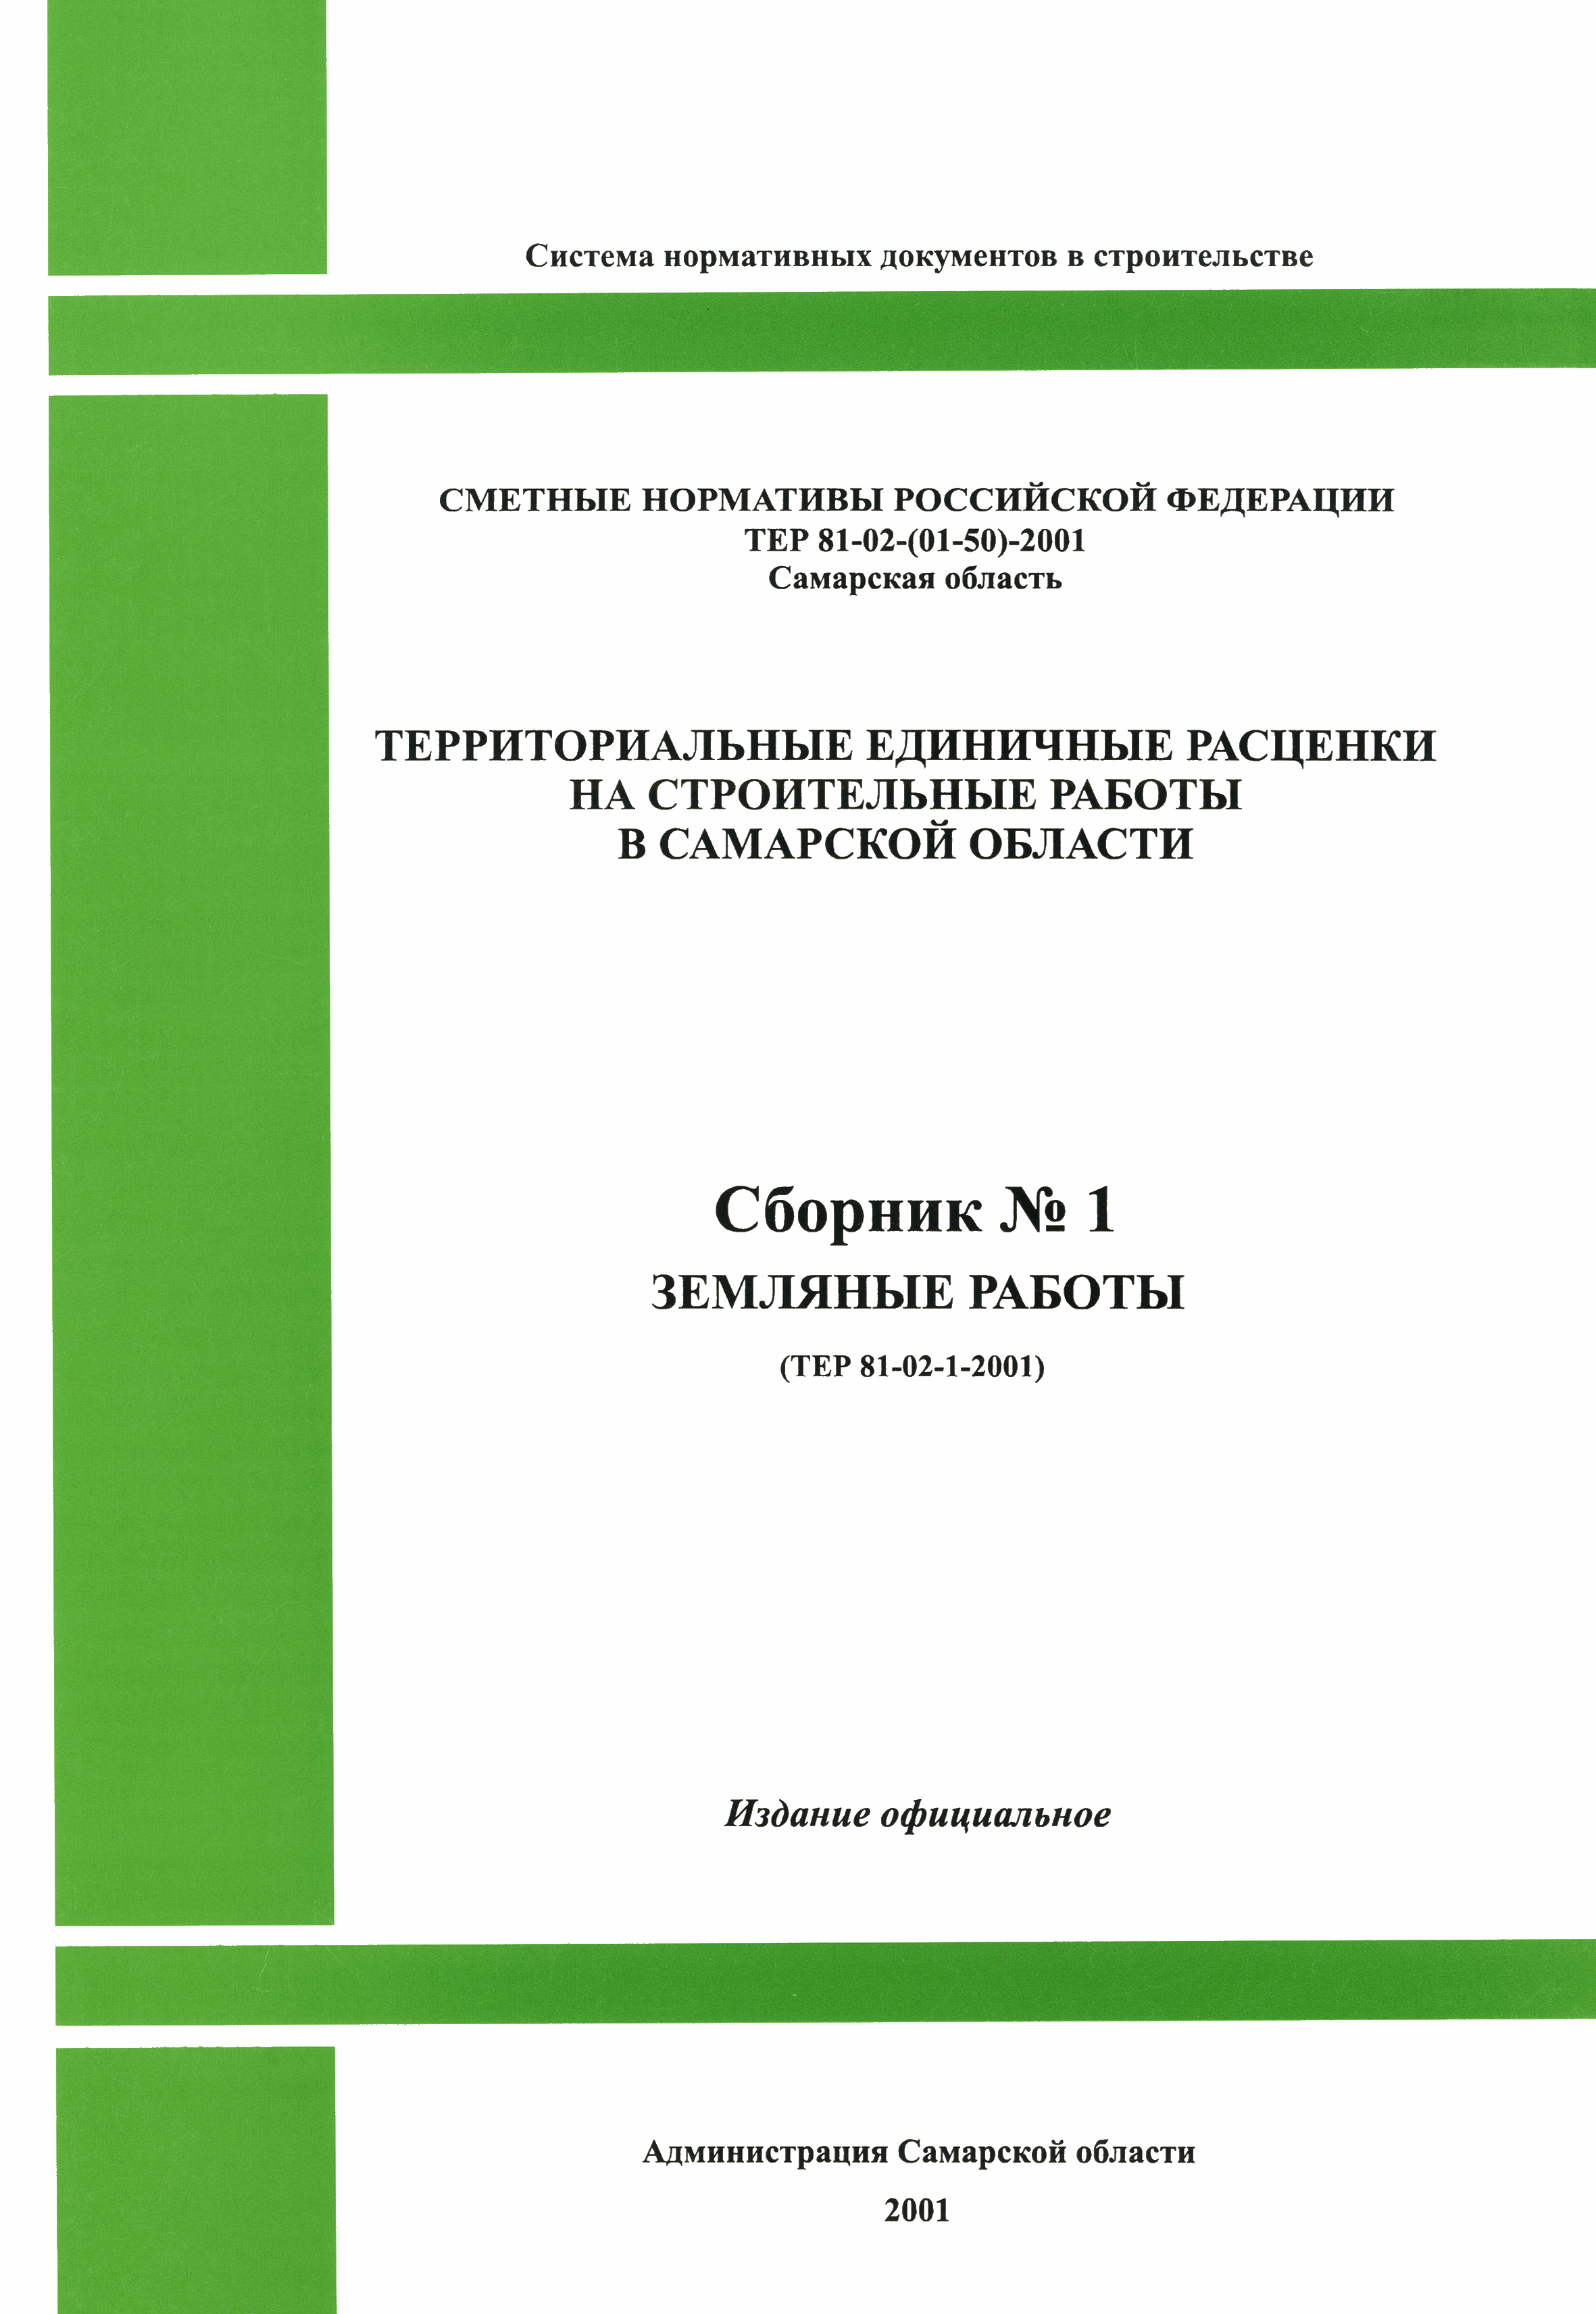 ТЕР Самарской области 2001-01